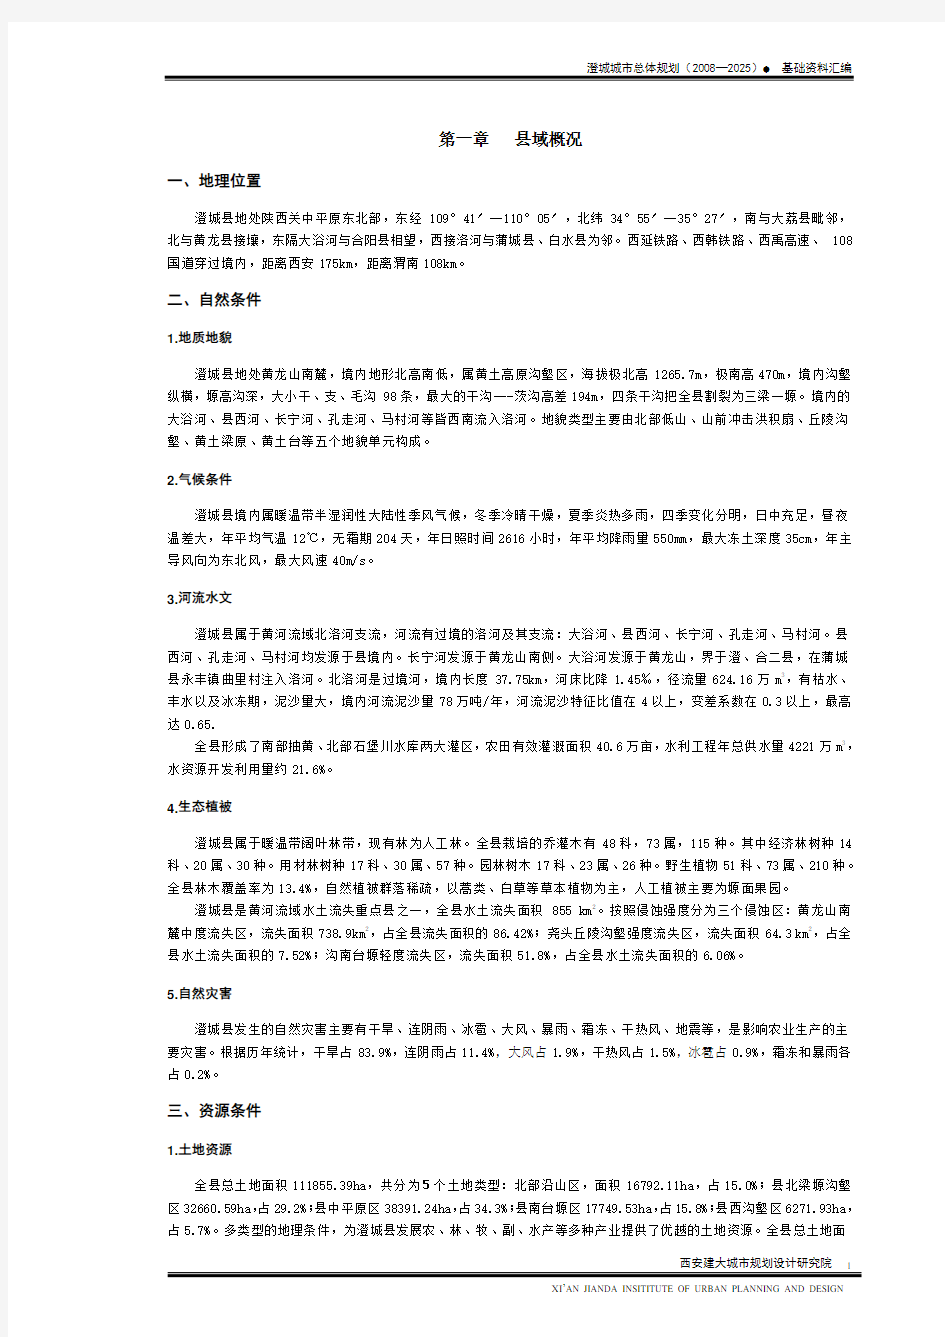 澄城县城总体规划(2008-2025)基础资料汇编